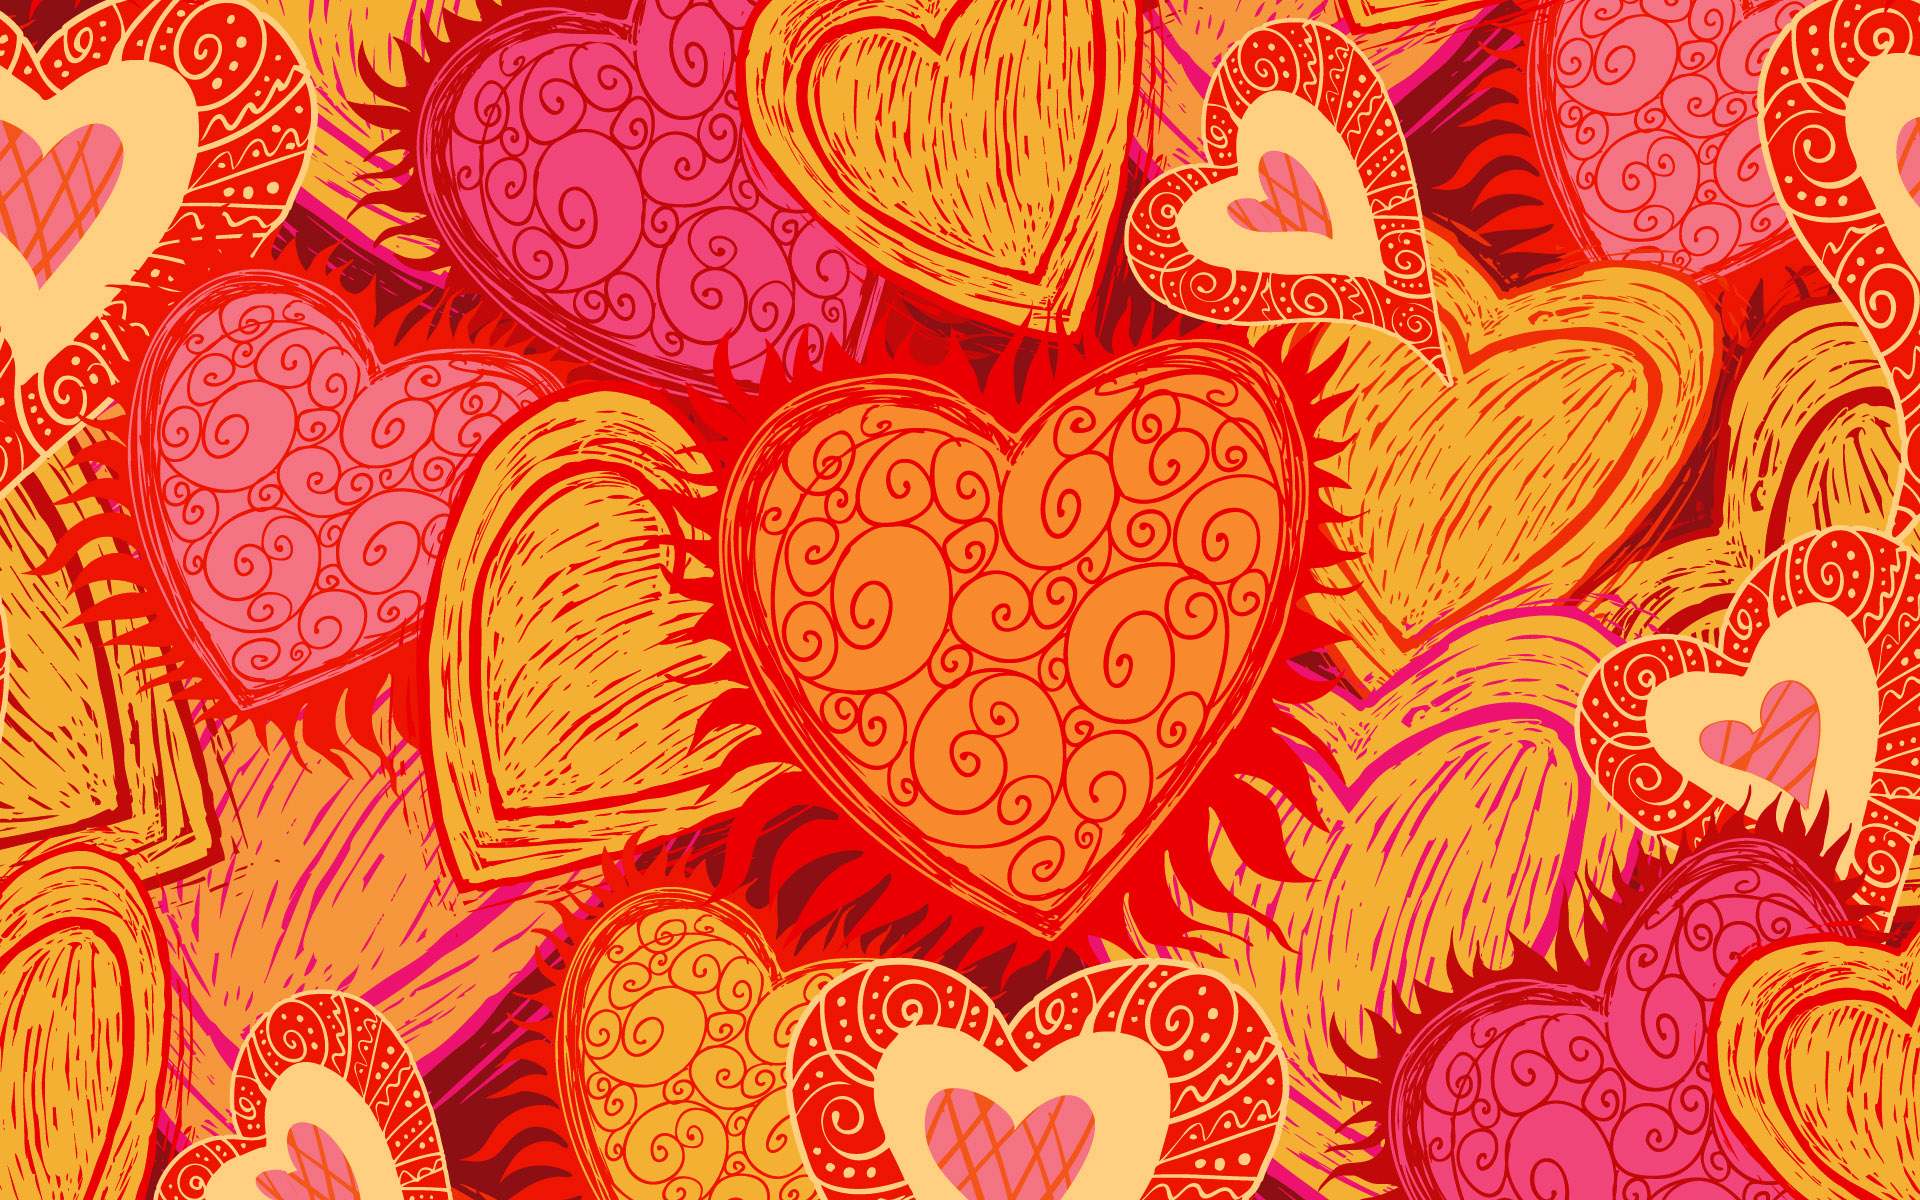 Descarga gratis la imagen Día De San Valentín, Día Festivo, Corazón en el escritorio de tu PC